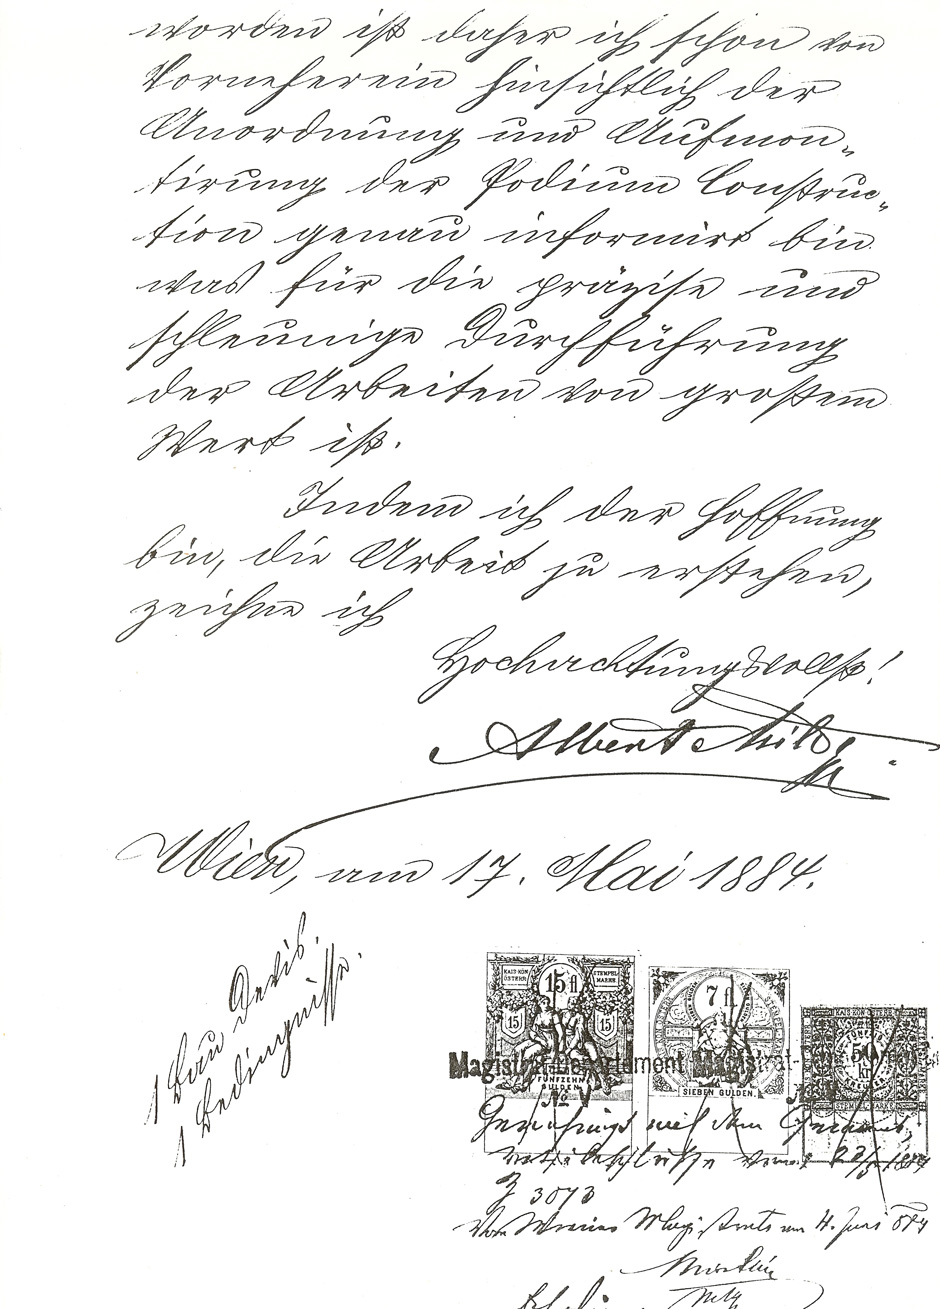 Archivbild: Offert an die Gemeinde Wien Seite 2